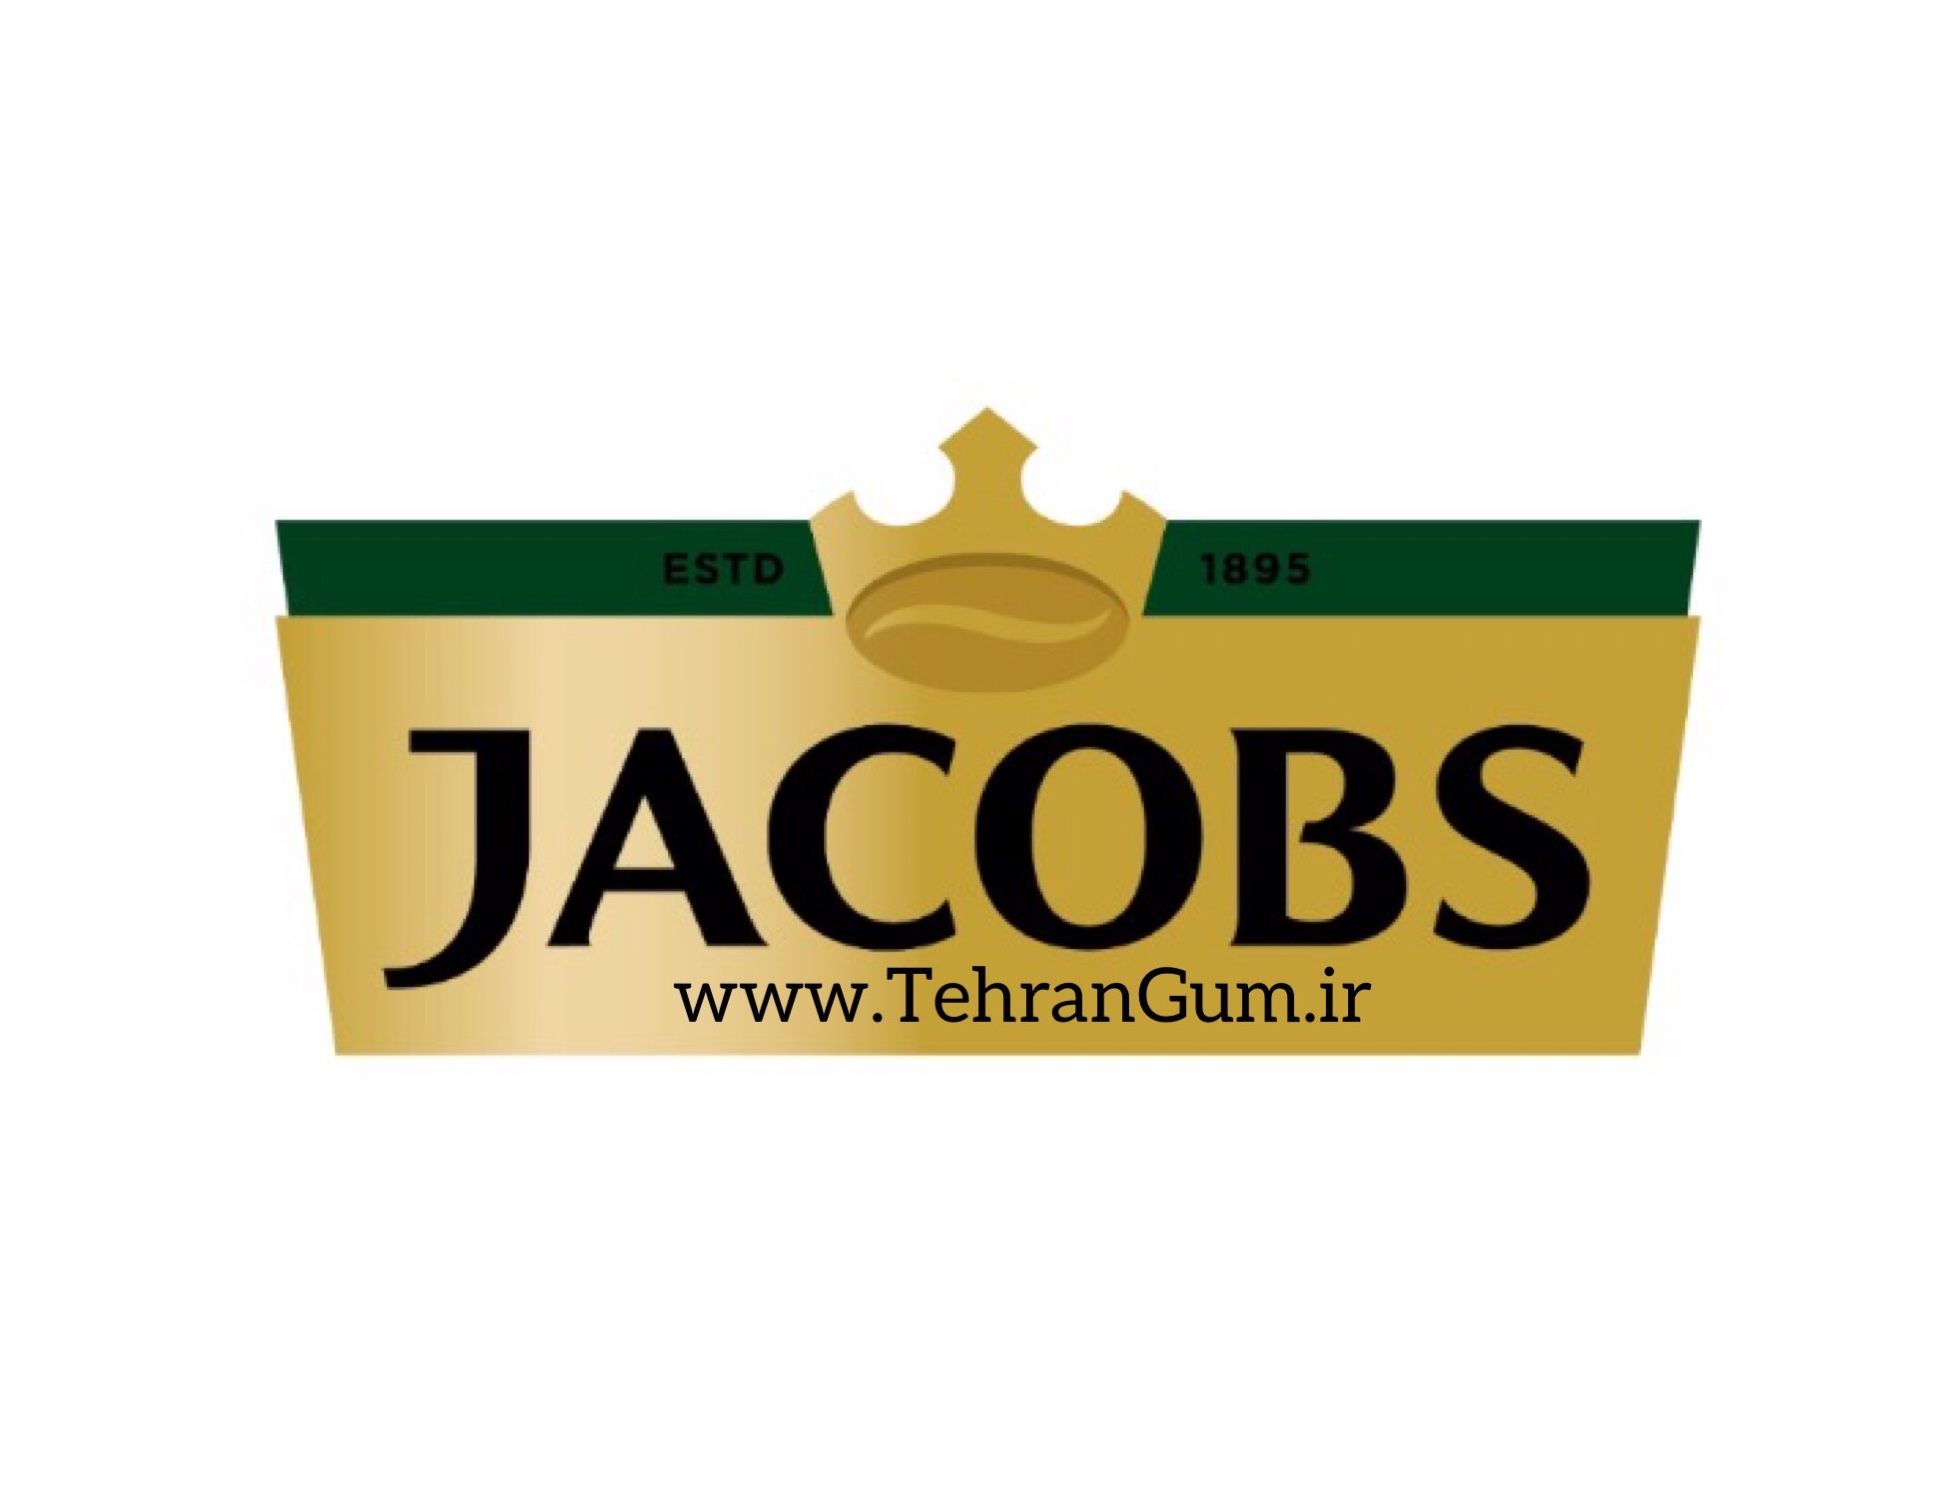 قهوه جاکوبز-Jacobs coffee